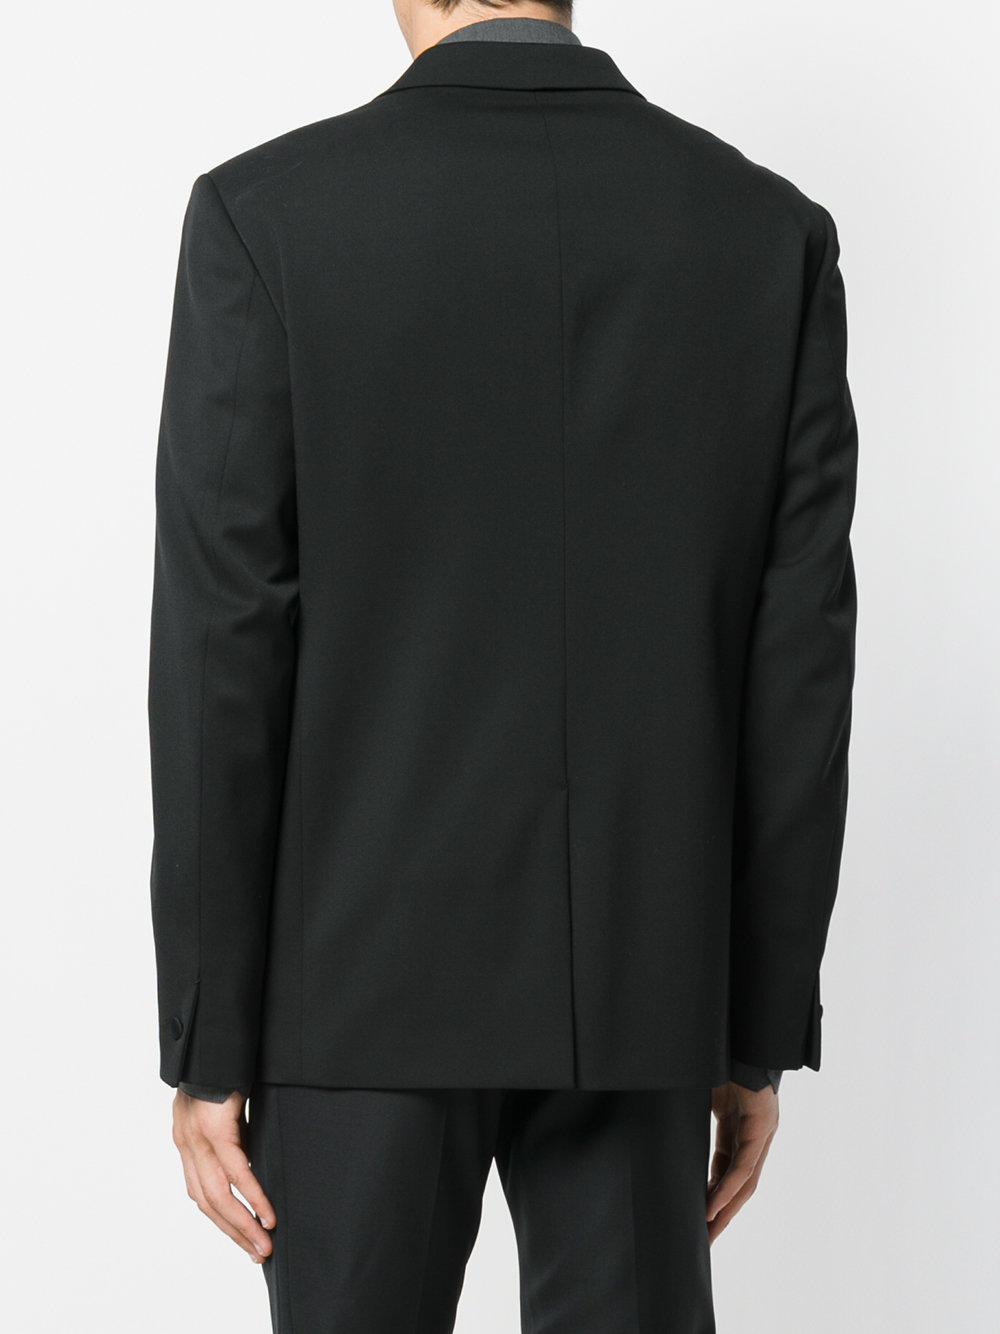 Versace Wool Tuxedo Blazer in Black for Men - Lyst